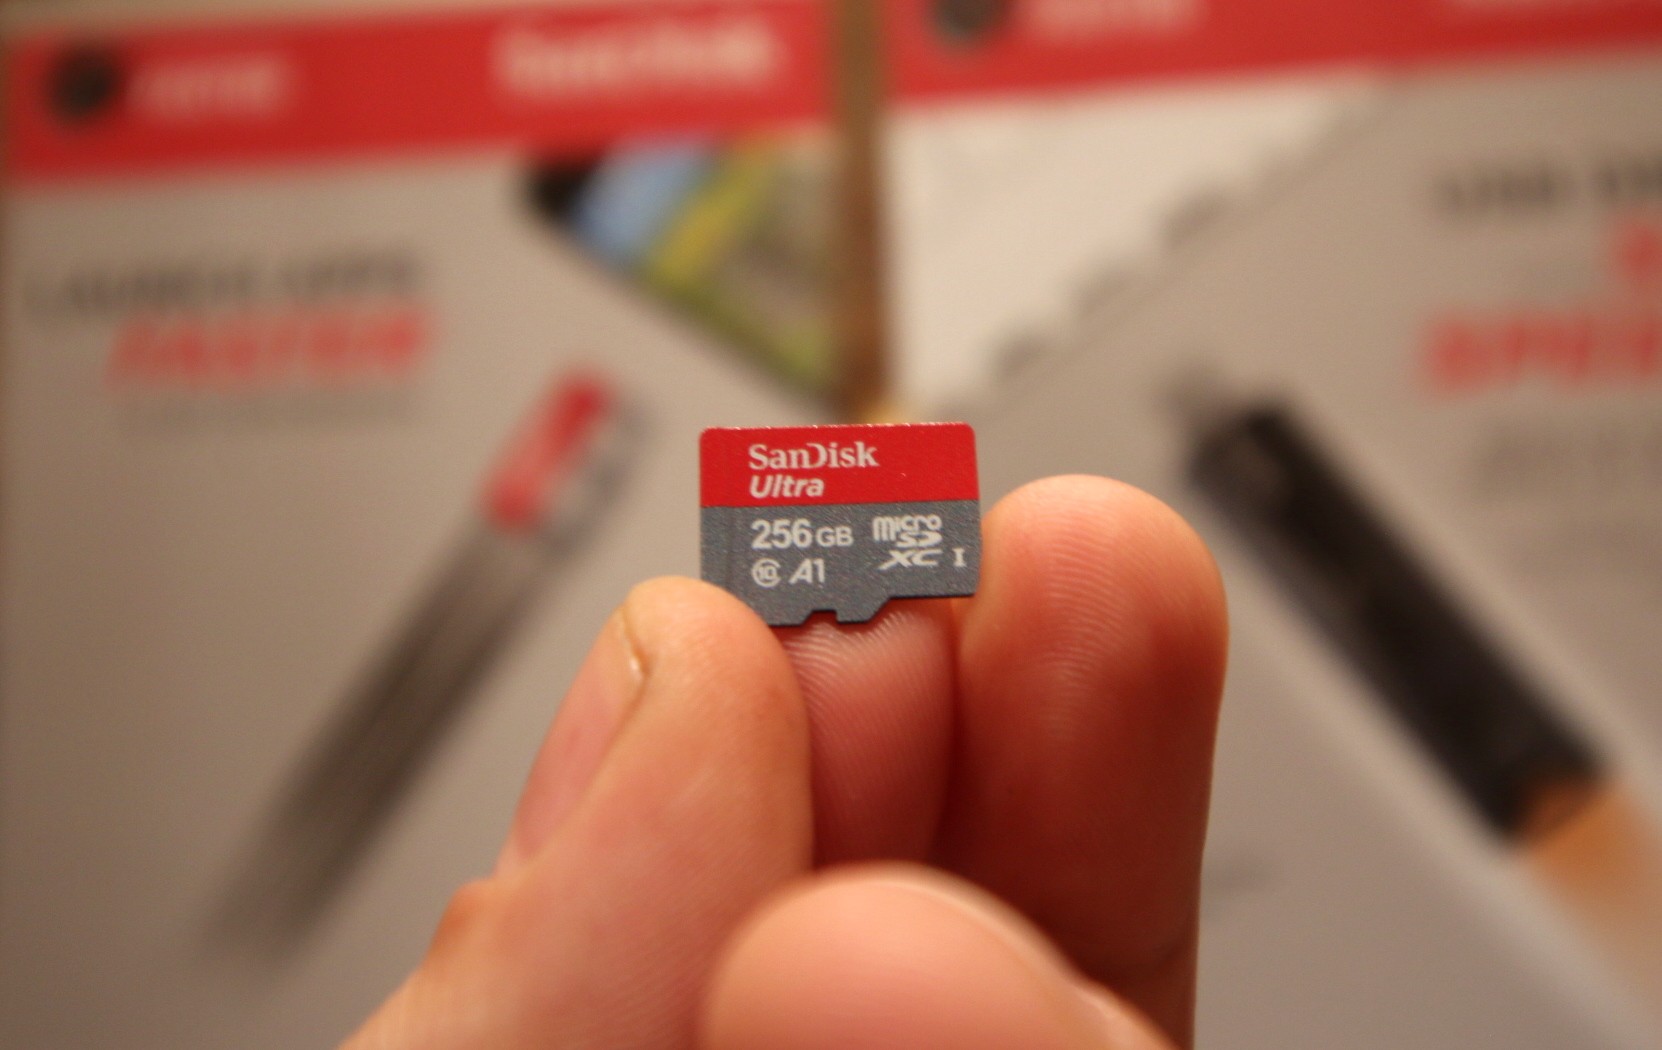 San Disk A1 MicroSD Card BestCloseup 1